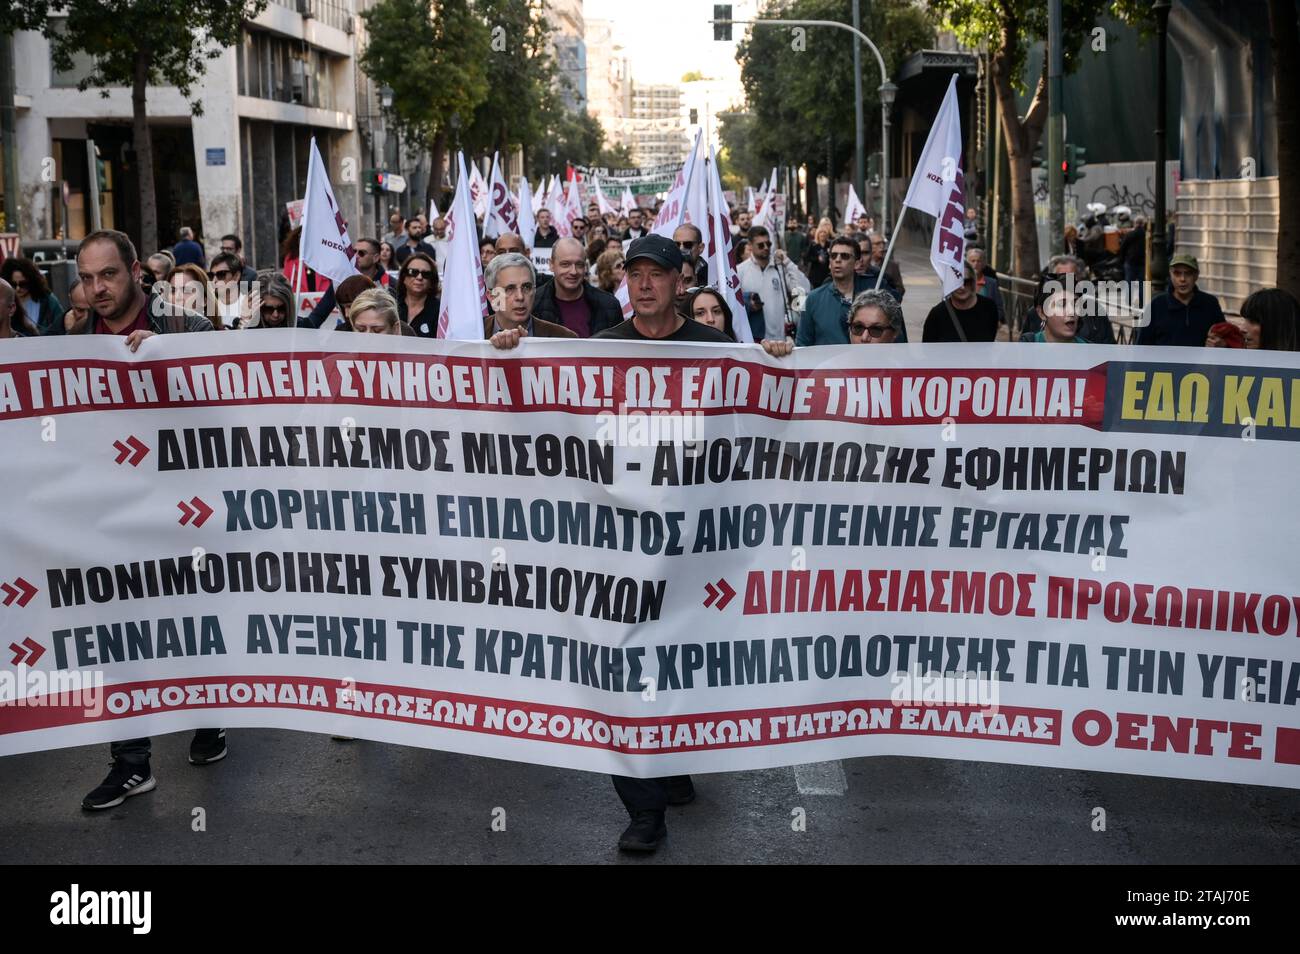 Streikende Krankenhausärzte rufen während eines Protestes Slogans, der Gehaltssteigerungen und Personaleinstellungen in Athen, Griechenland, fordert. Quelle: Dimitris Aspiotis/Alamy Stockfoto